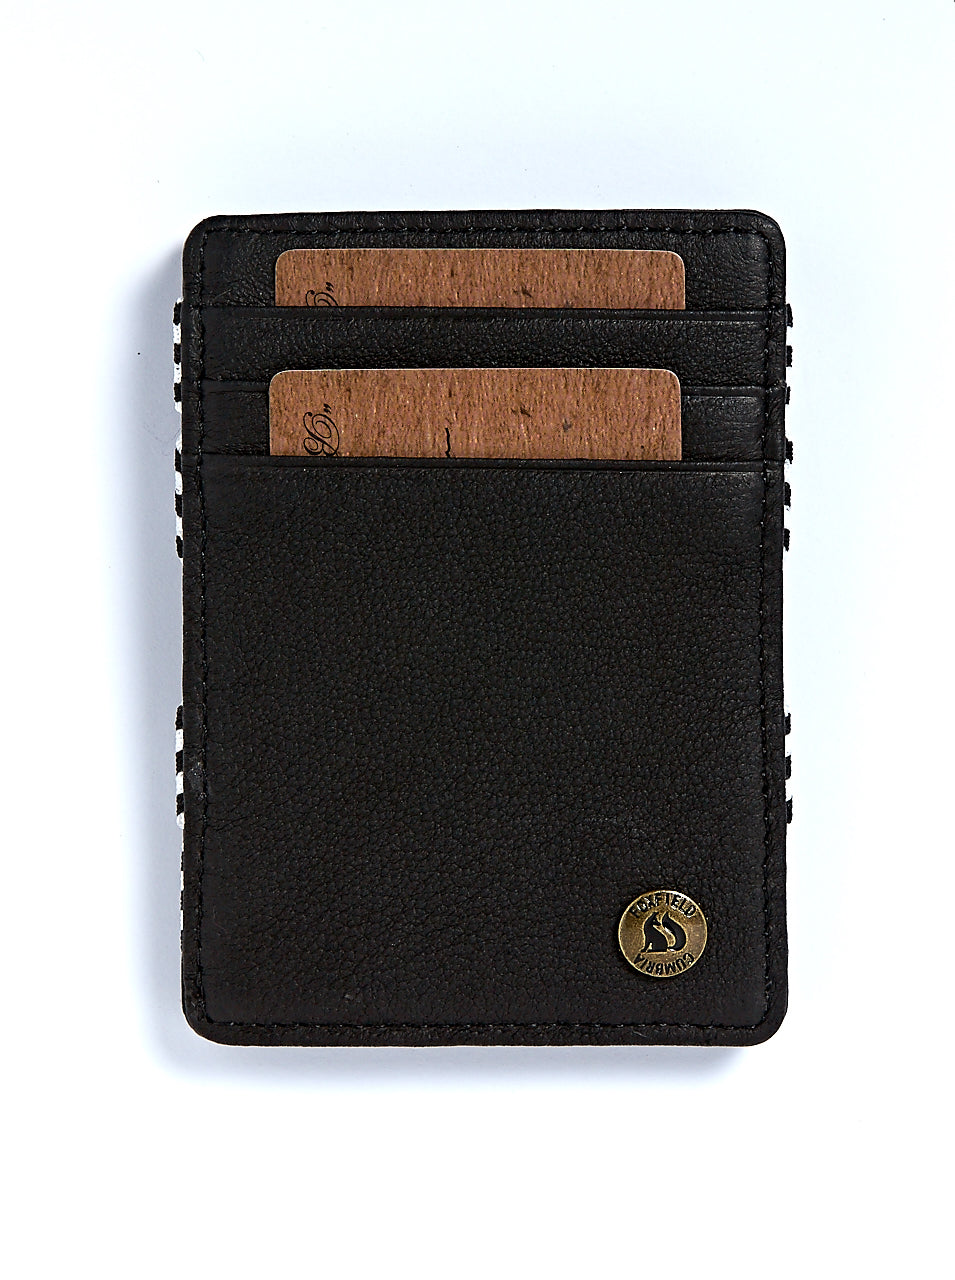 Foxfield leather Catbells wallet